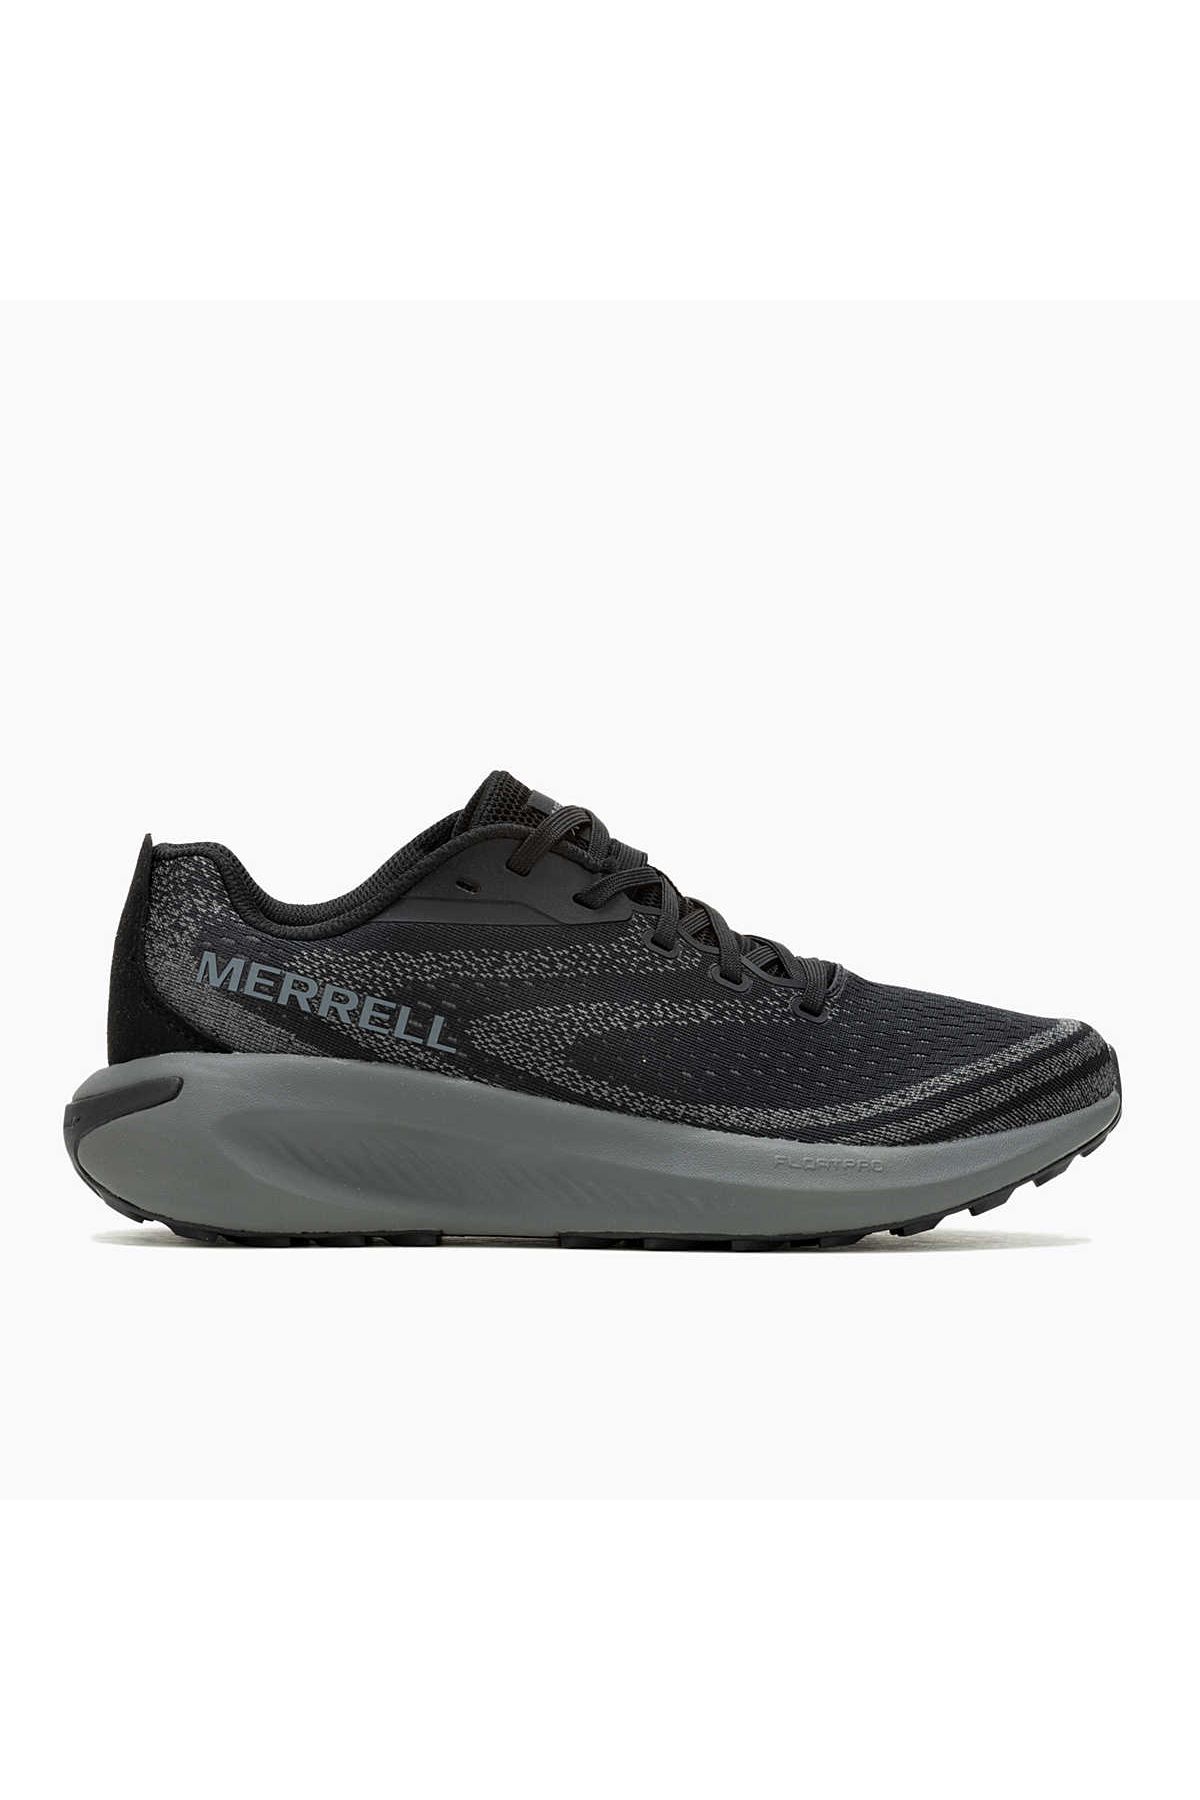 Merrell J068063 Morphlıte Erkek Spor Ayakkabısı Siyah